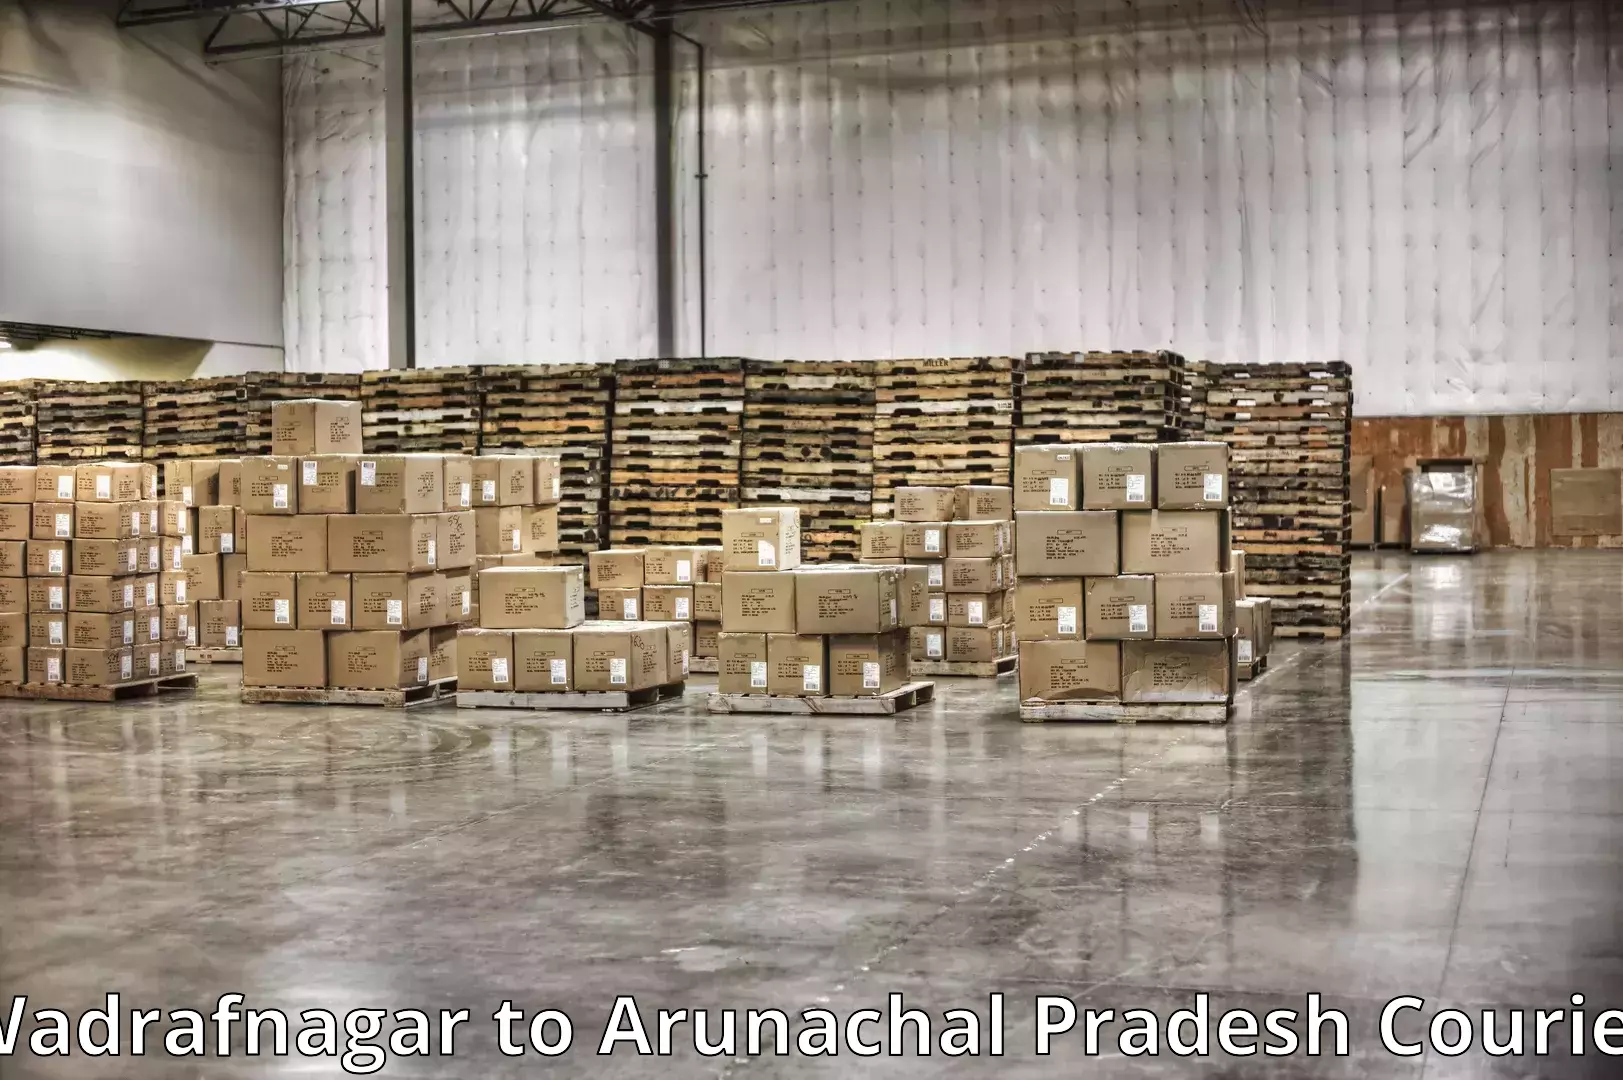 Local furniture movers Wadrafnagar to Arunachal Pradesh